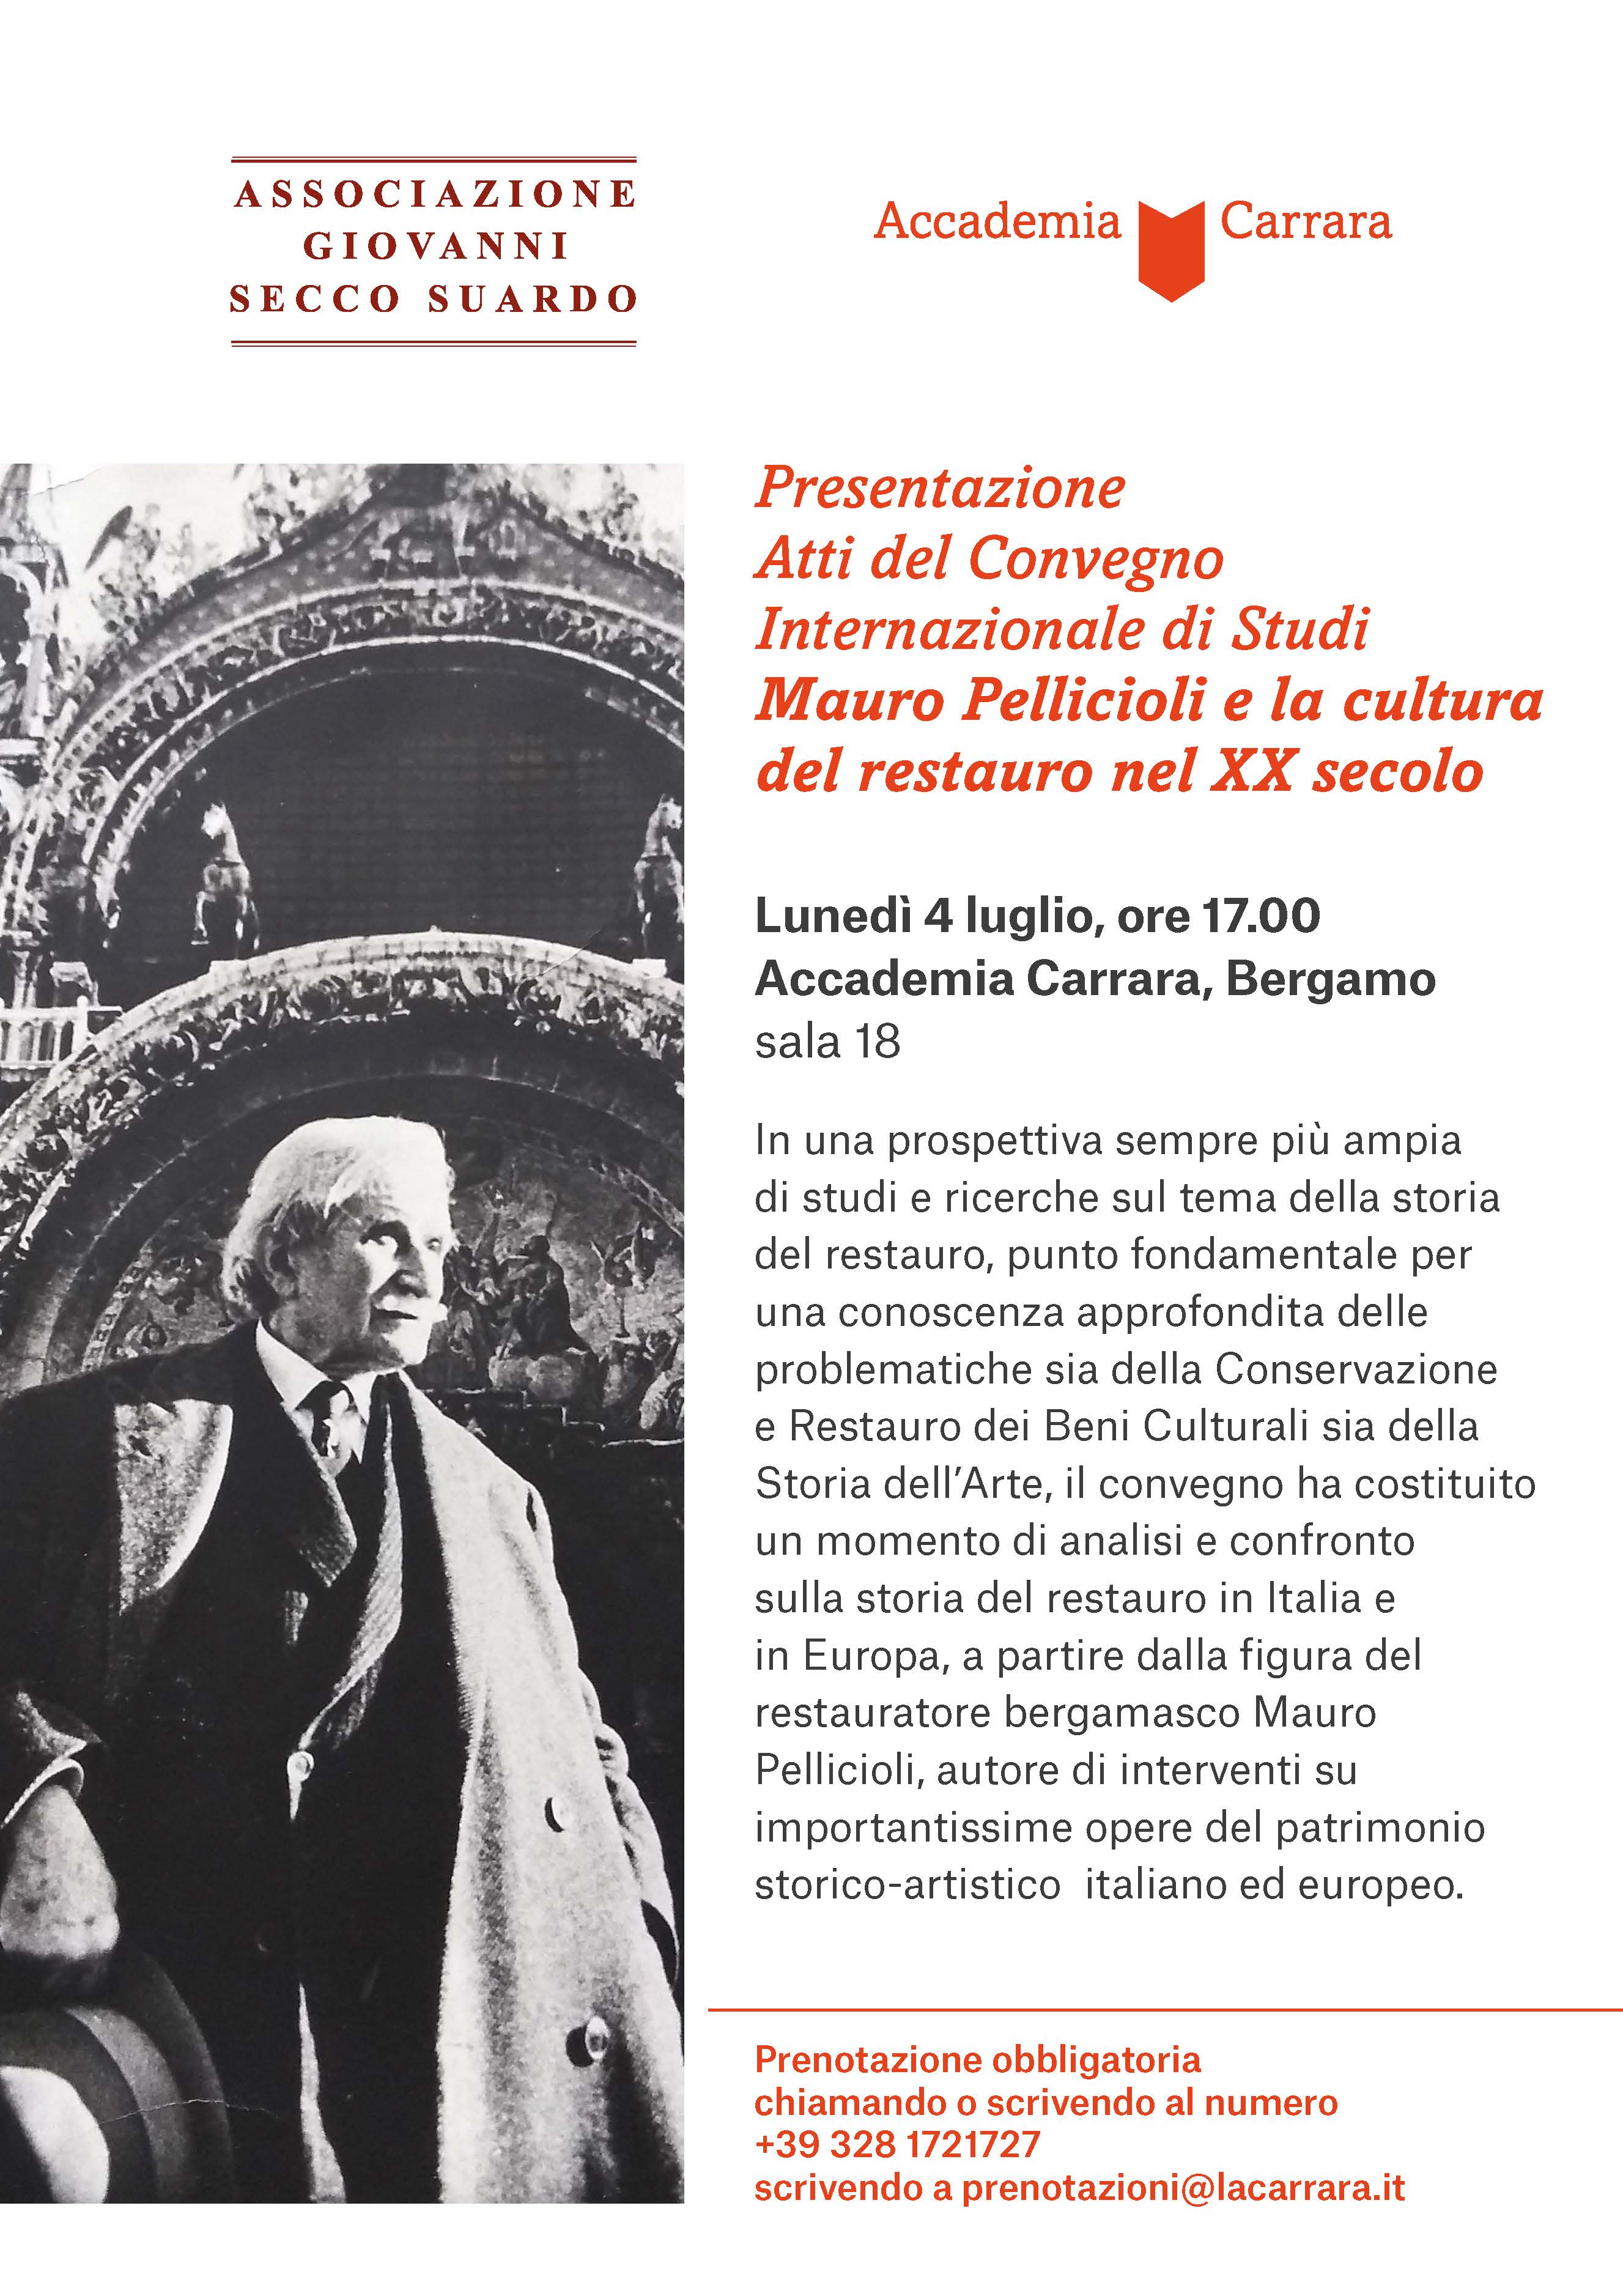 Immagine Presentazione Atti del Convegno Internazionale di Studi: Mauro Pellicioli e la cultura del restauro nel XX secolo